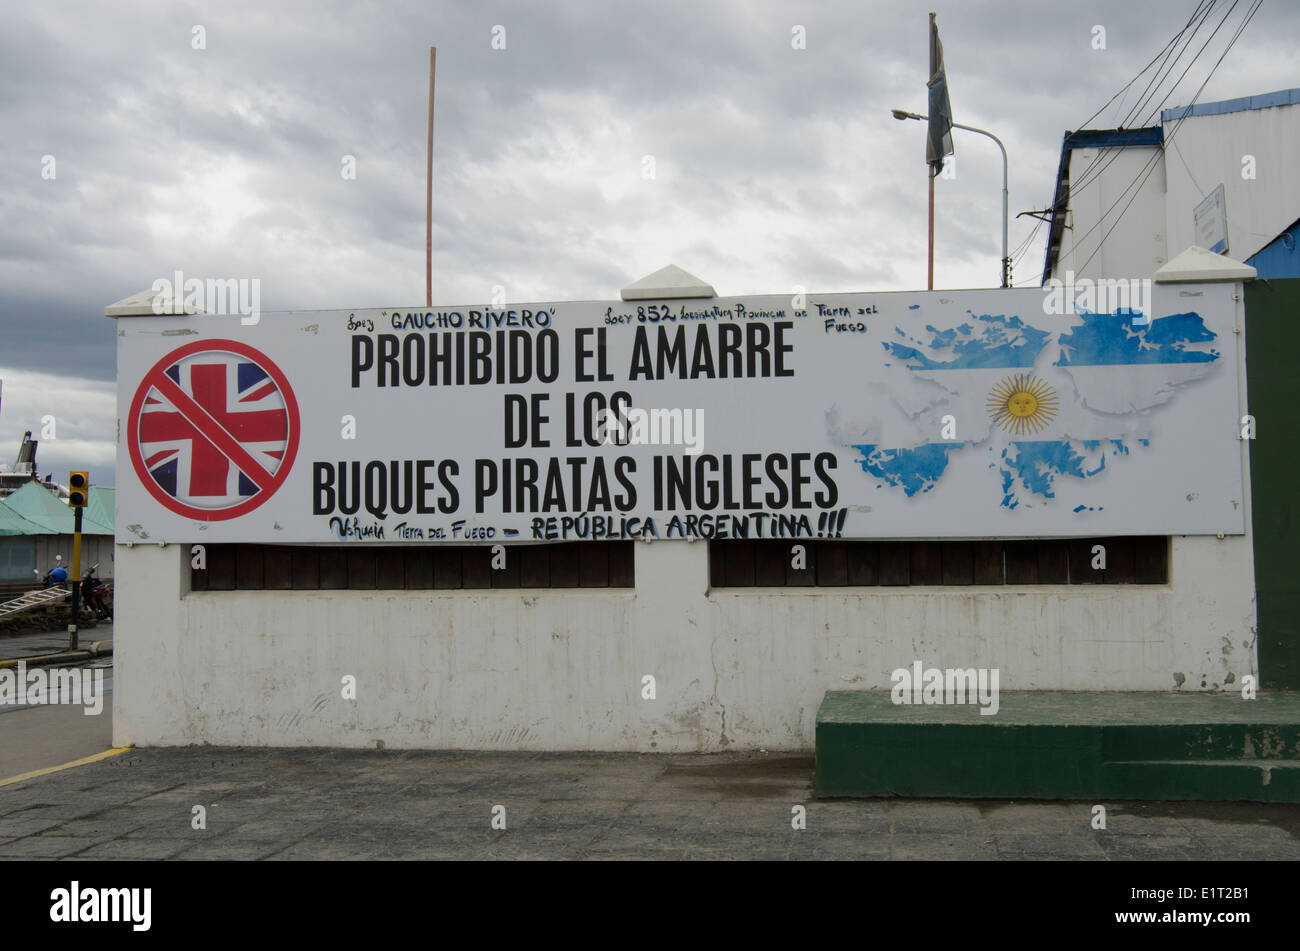 Anti-British sign at Ushuaia, capital of Tierra del Fuego, Antártida e Islas del Atlántico Sur Province, Argentina Stock Photo